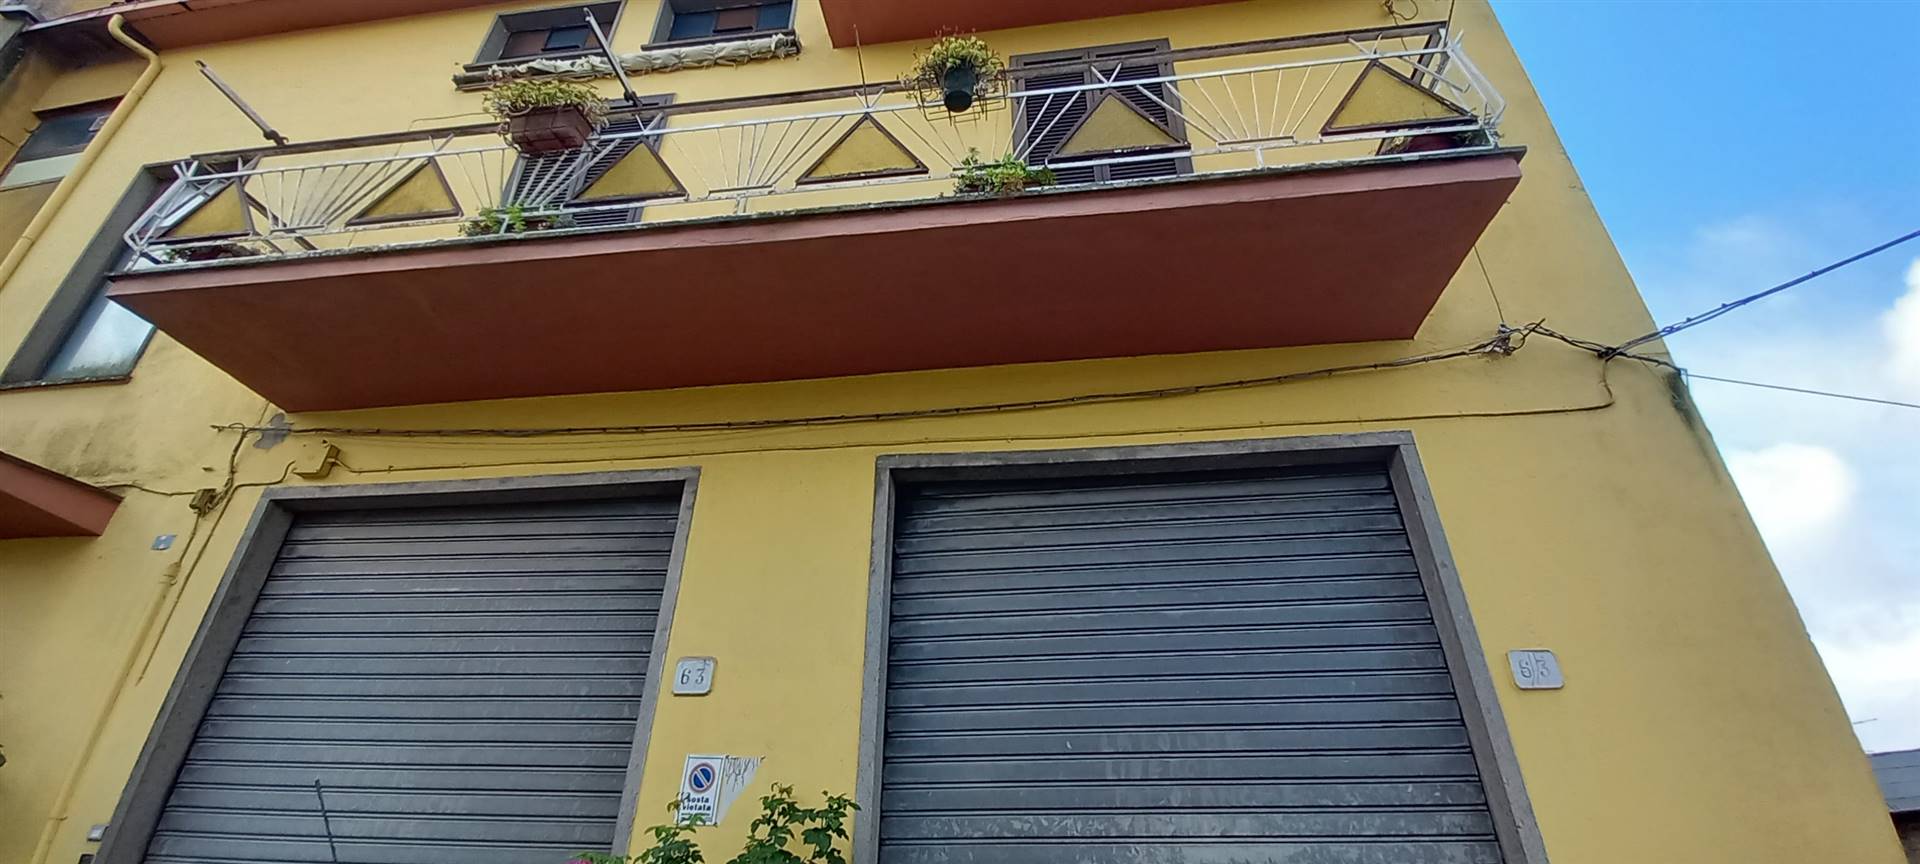 Appartamento in affitto a Montefiascone, 5 locali, prezzo € 450 | CambioCasa.it